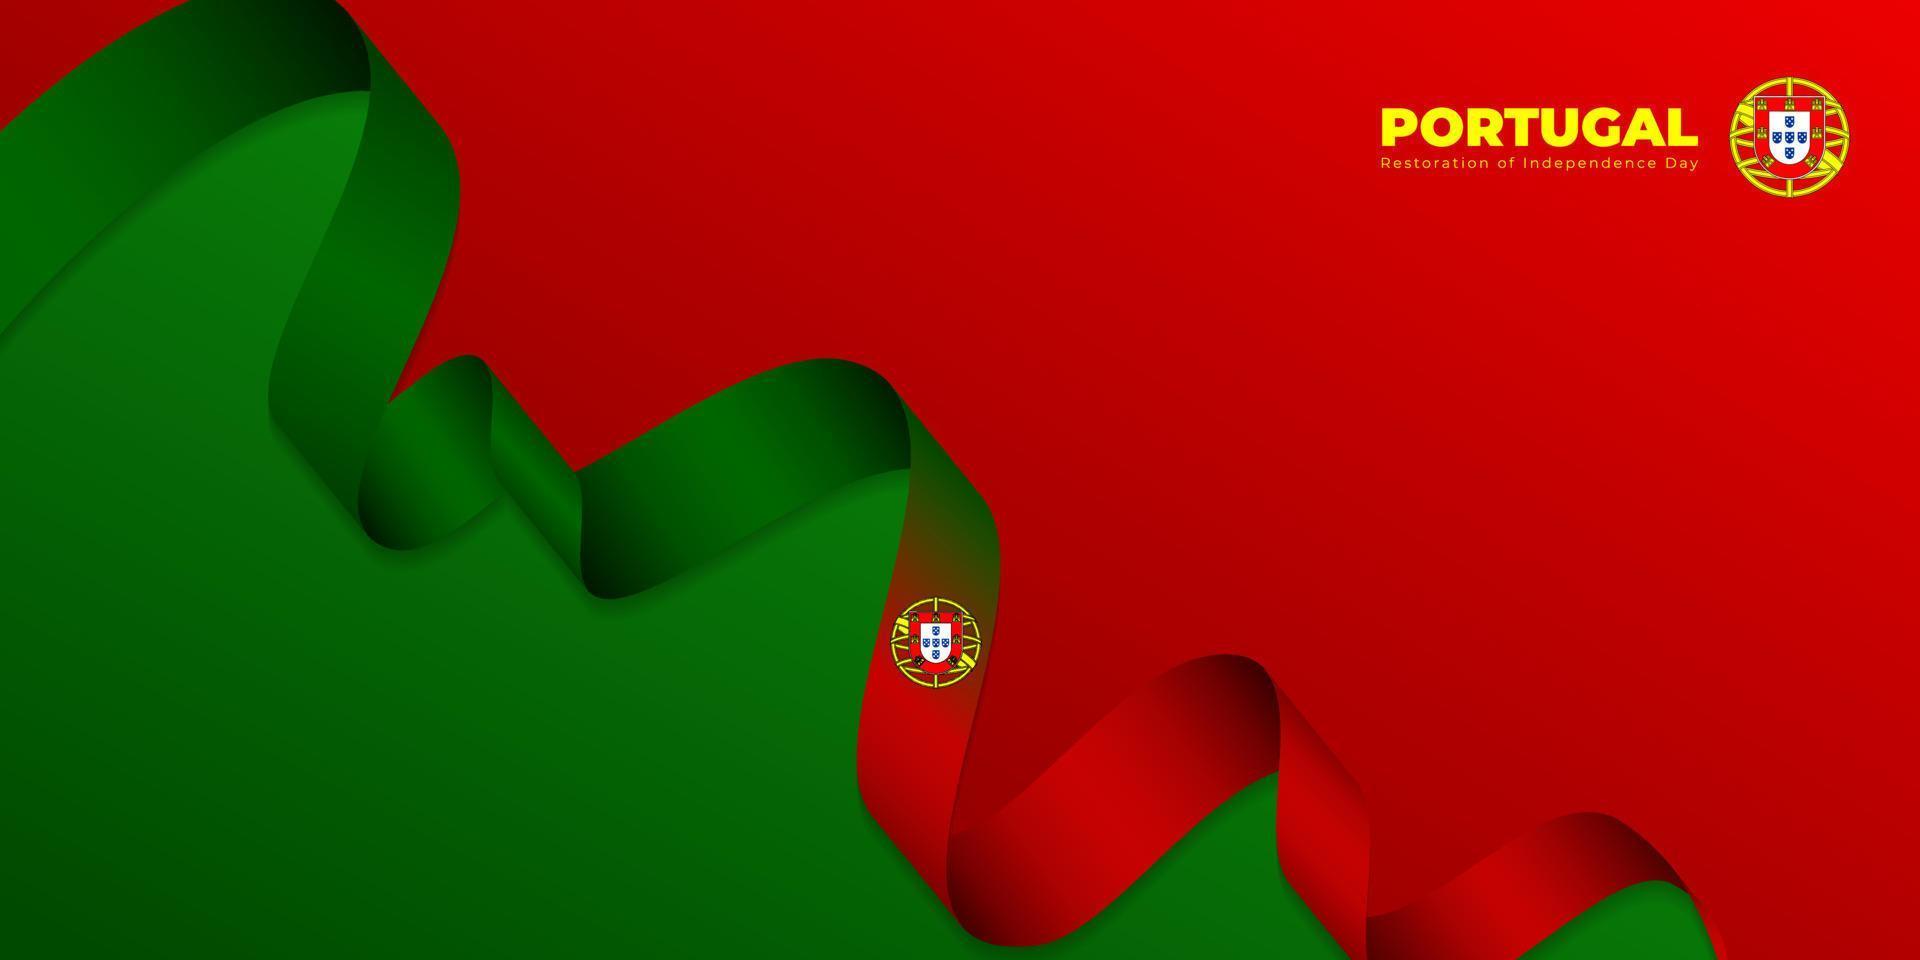 wapperende vlag van portugal met rode en groene achtergrond. Portugal restauratie onafhankelijkheidsdag sjabloonontwerp. vector